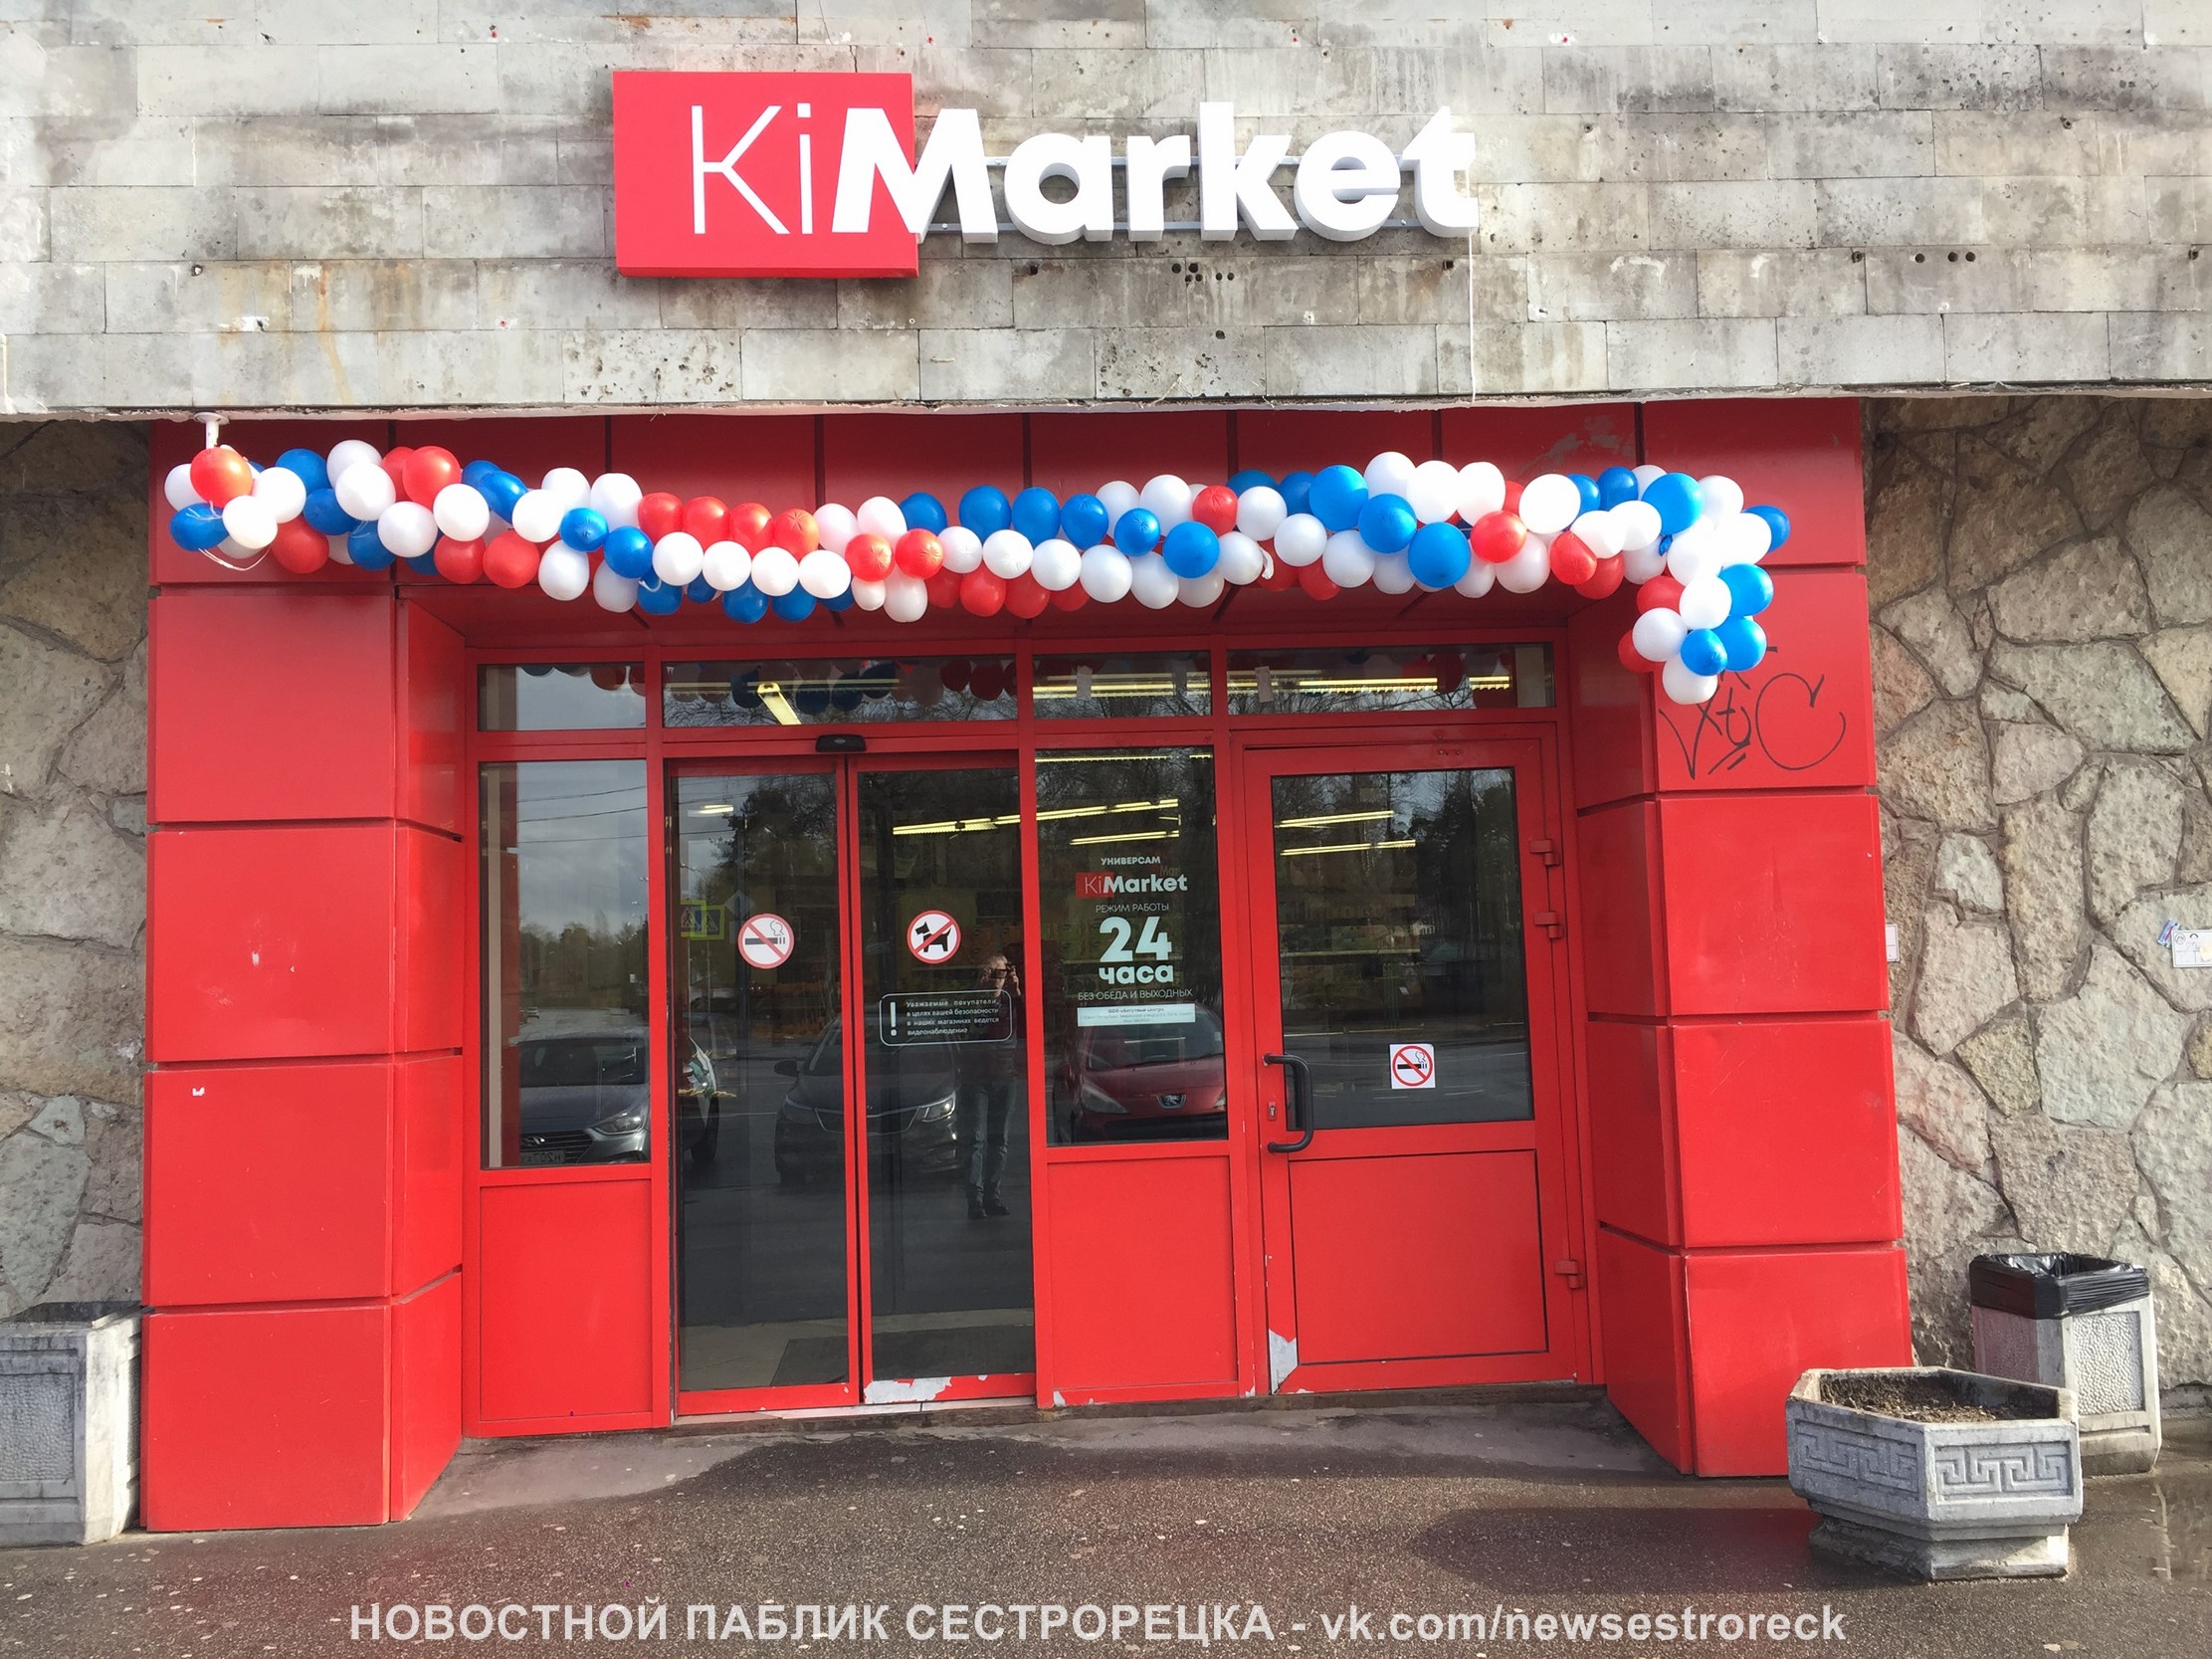 В Сестрорецке открылся магазин новой сети Ki-market